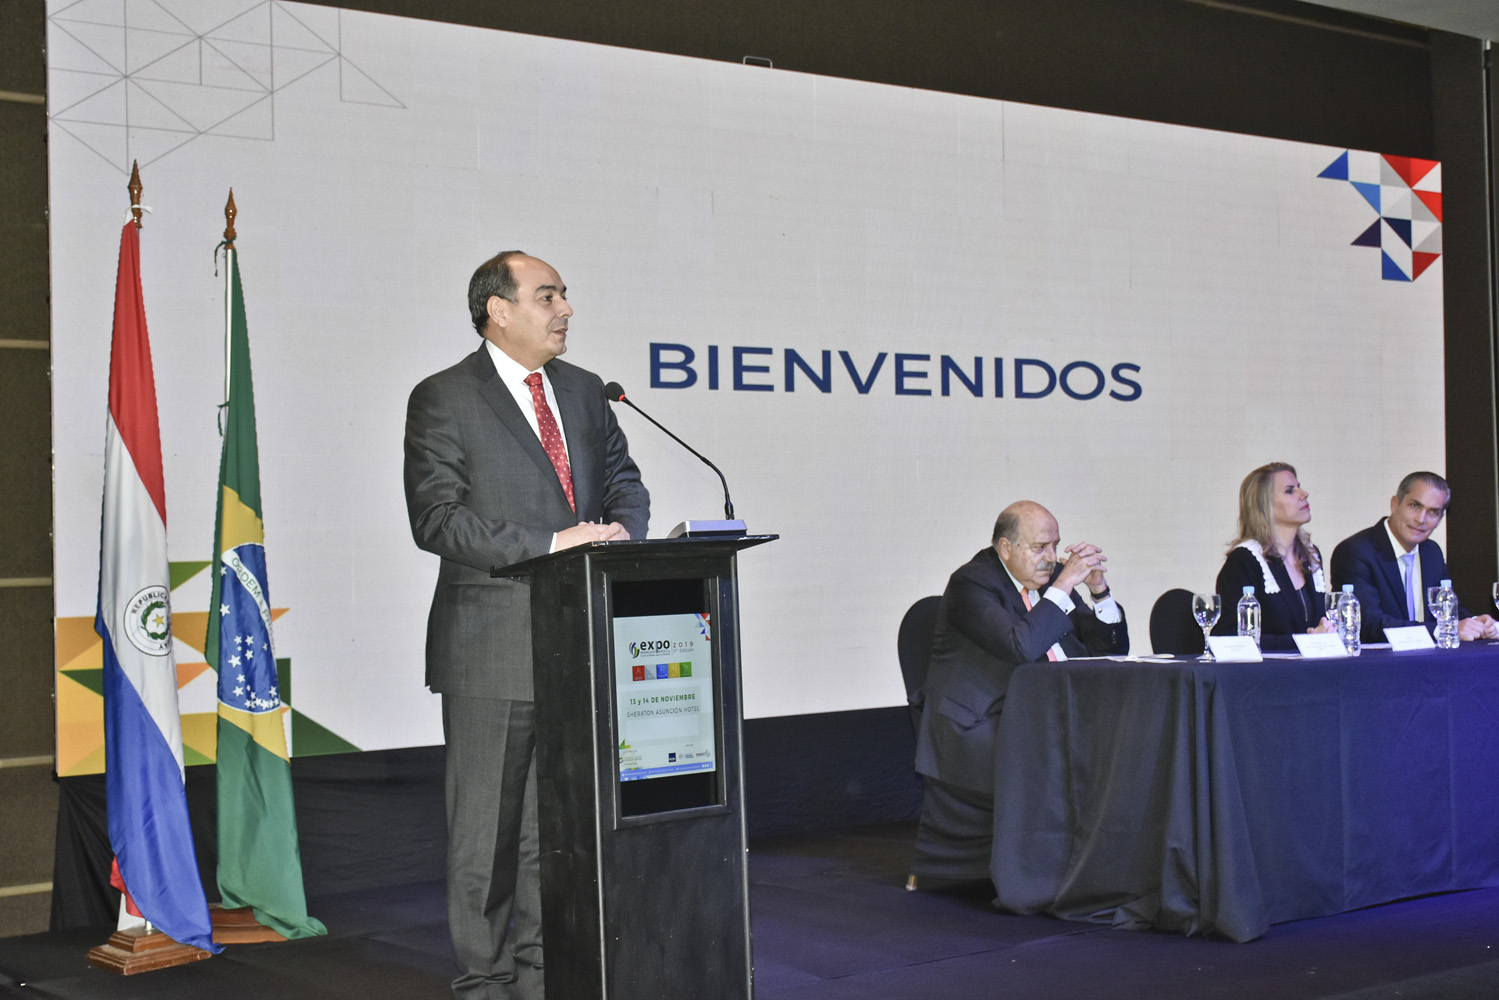 Canciller dijo que Paraguay y Brasil deben empezar a trabajar conjuntamente en escalas productivas